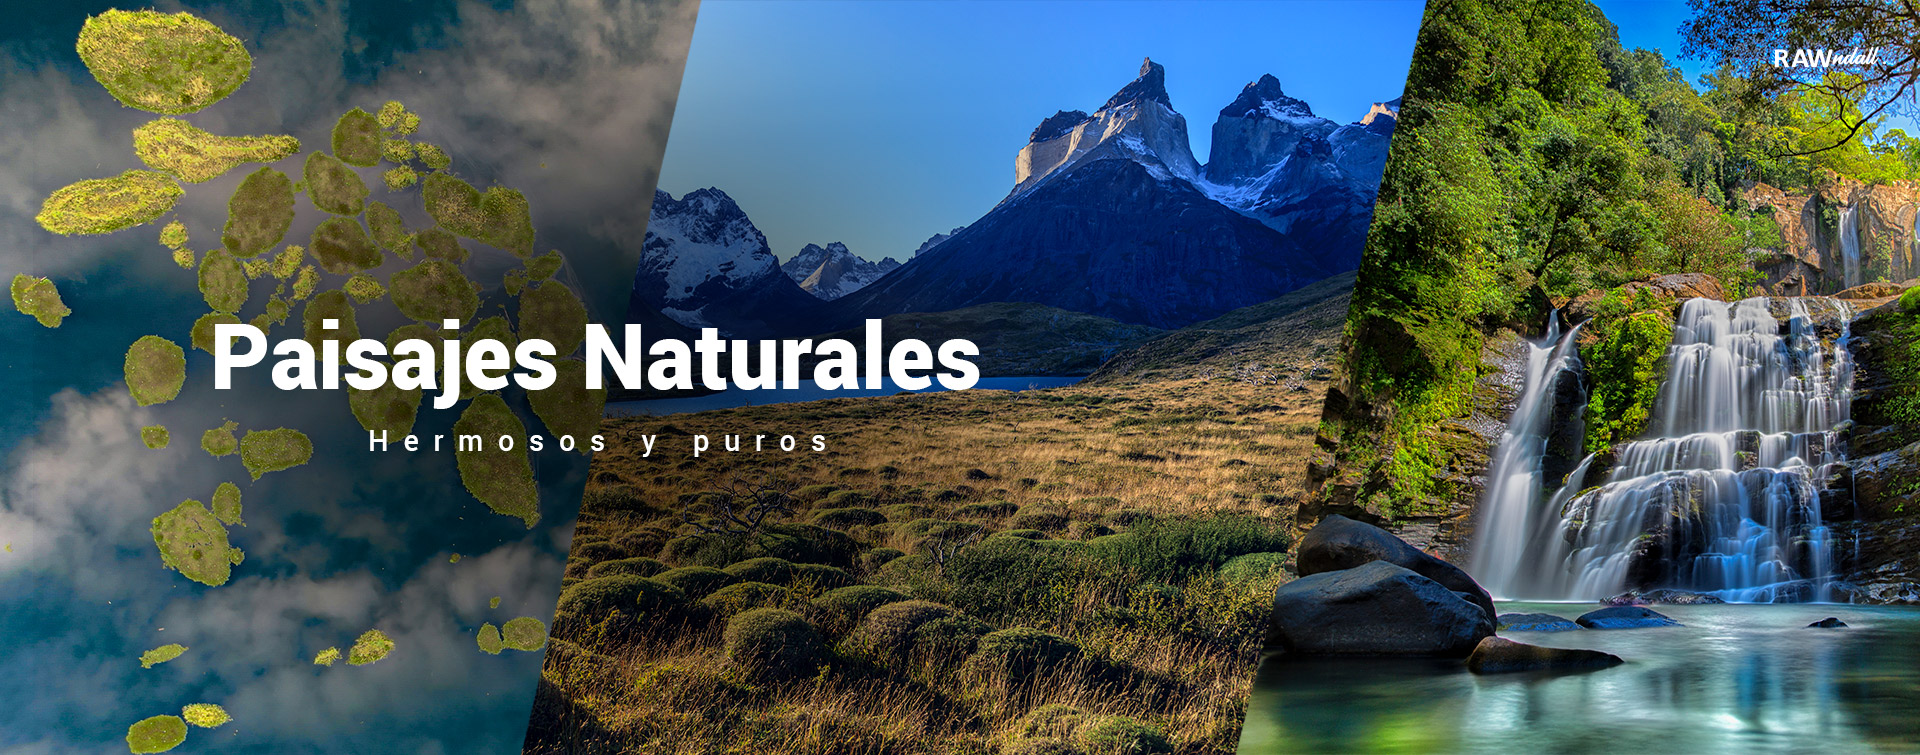 Conjunto de tres fotos de paisajes naturales, en la primera foto la laguna del hule en Costa Rica, en la segunda Cuernos del Paine en Chile y la tercera es una fotografía de las cataratas de Nauyaca en Costa Rica.